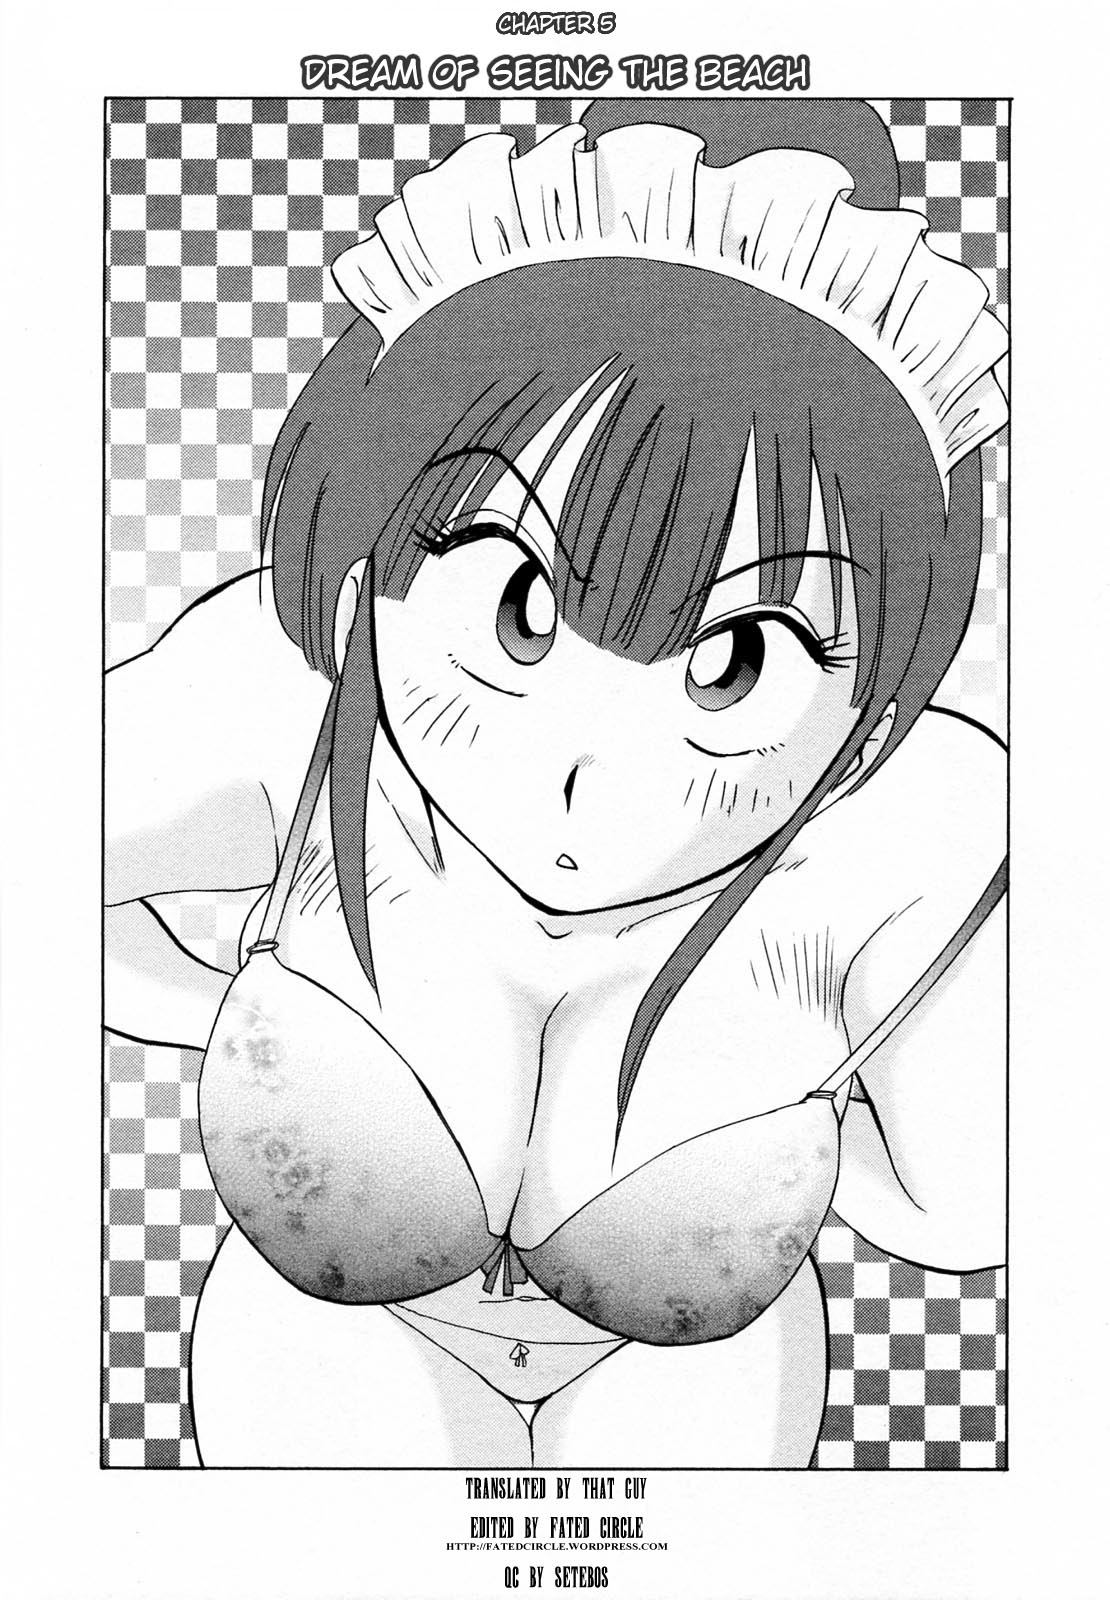 [Tsuya Tsuya]Maid no Mitsuko-san Volume 1 (ENG) 